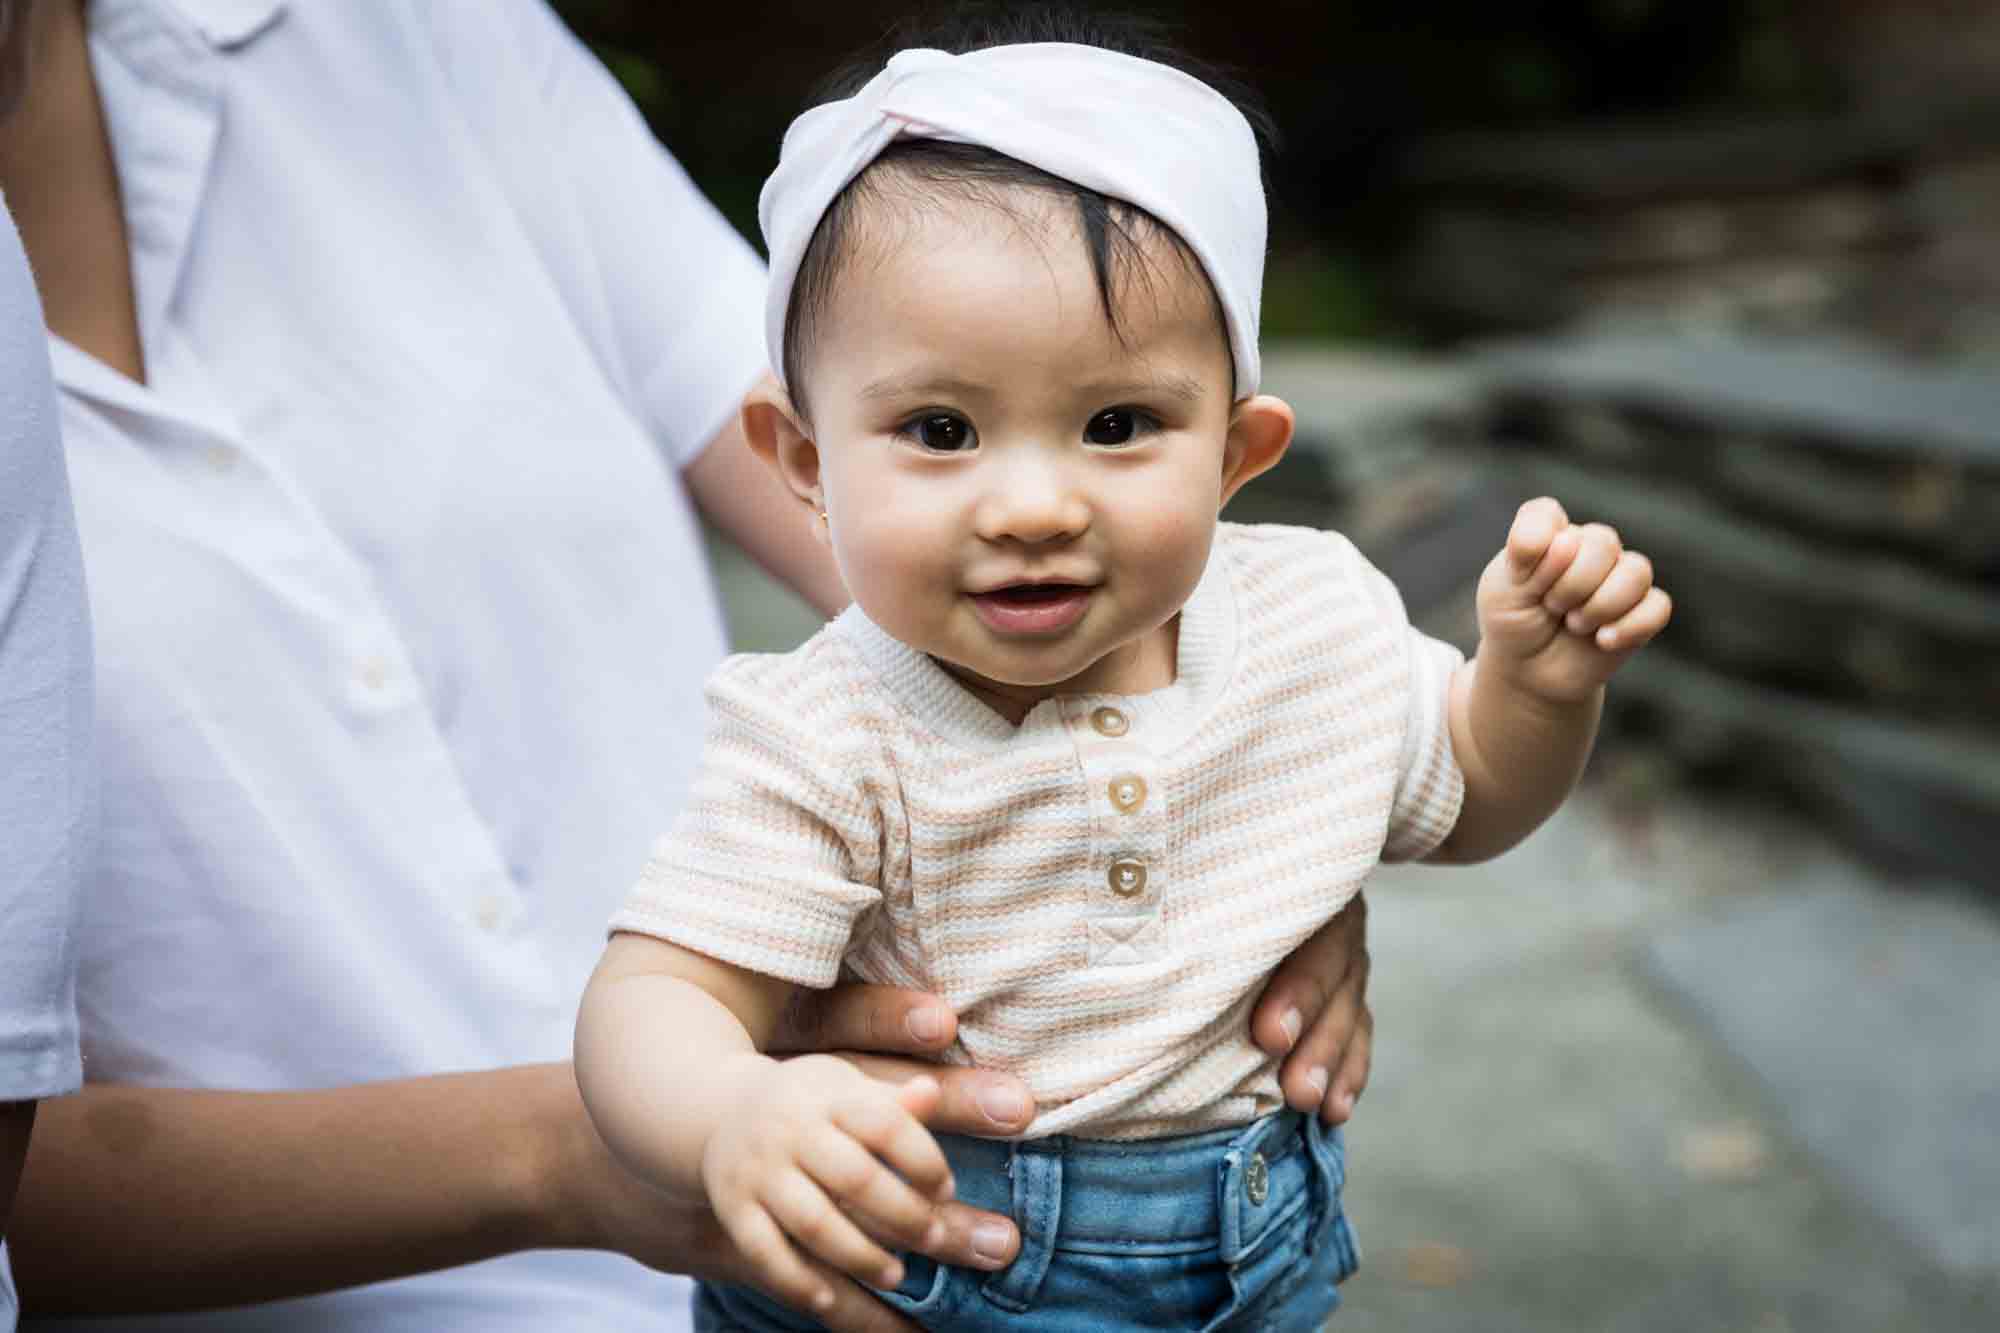 Baby girl wearing white headband and denim skirt